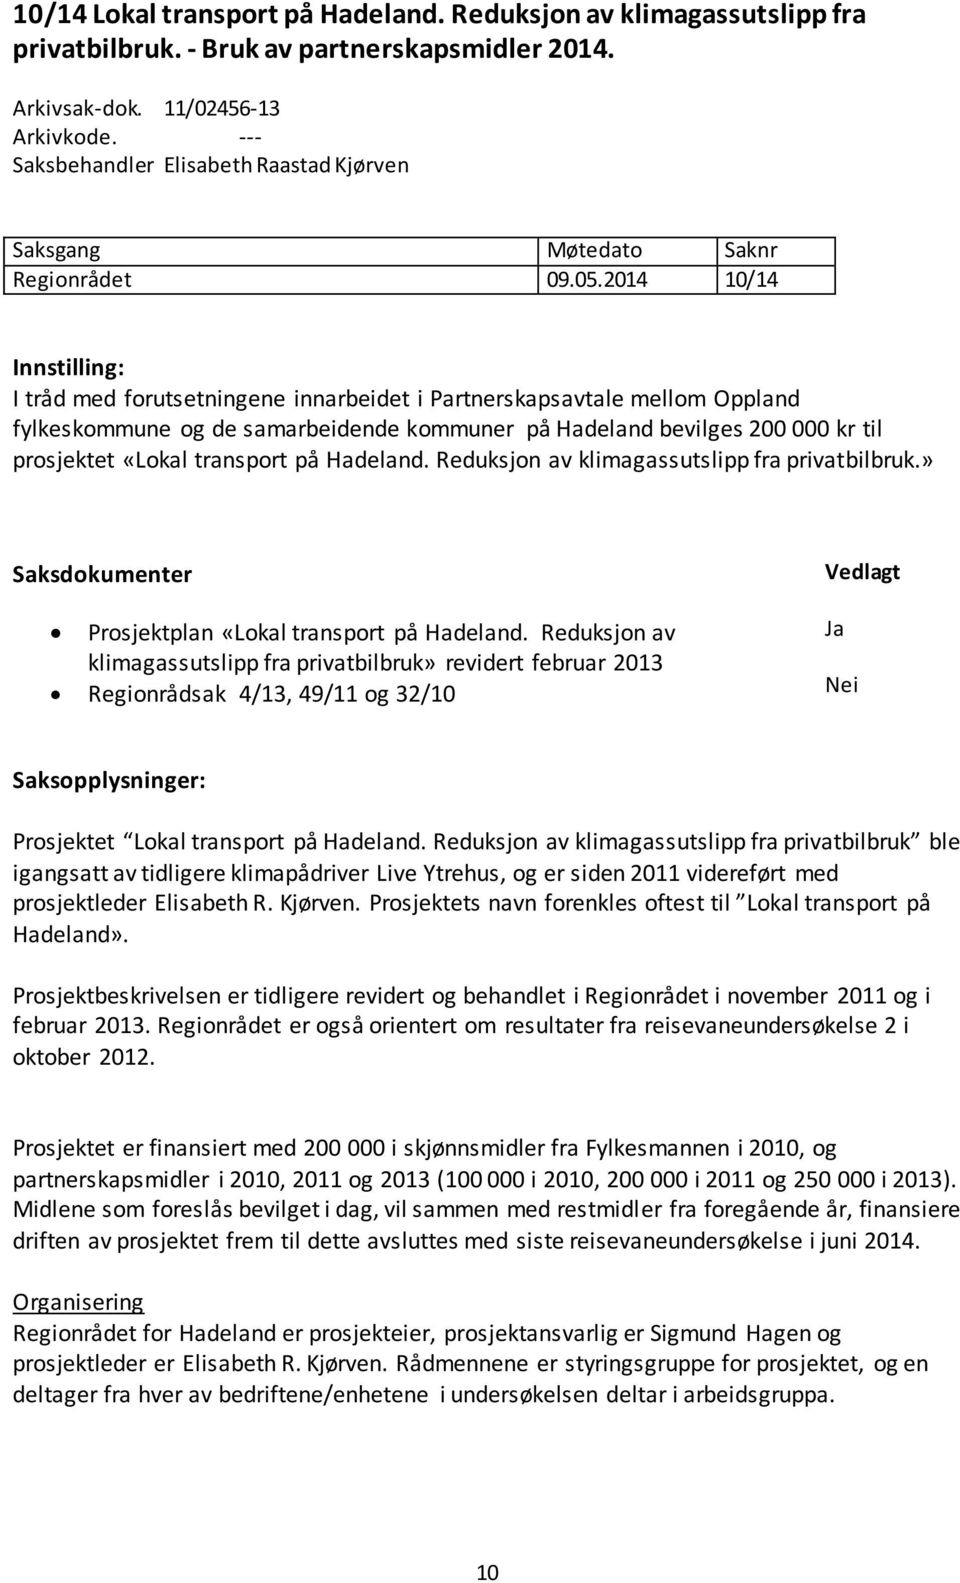 2014 10/14 Innstilling: I tråd med forutsetningene innarbeidet i Partnerskapsavtale mellom Oppland fylkeskommune og de samarbeidende kommuner på Hadeland bevilges 200 000 kr til prosjektet «Lokal